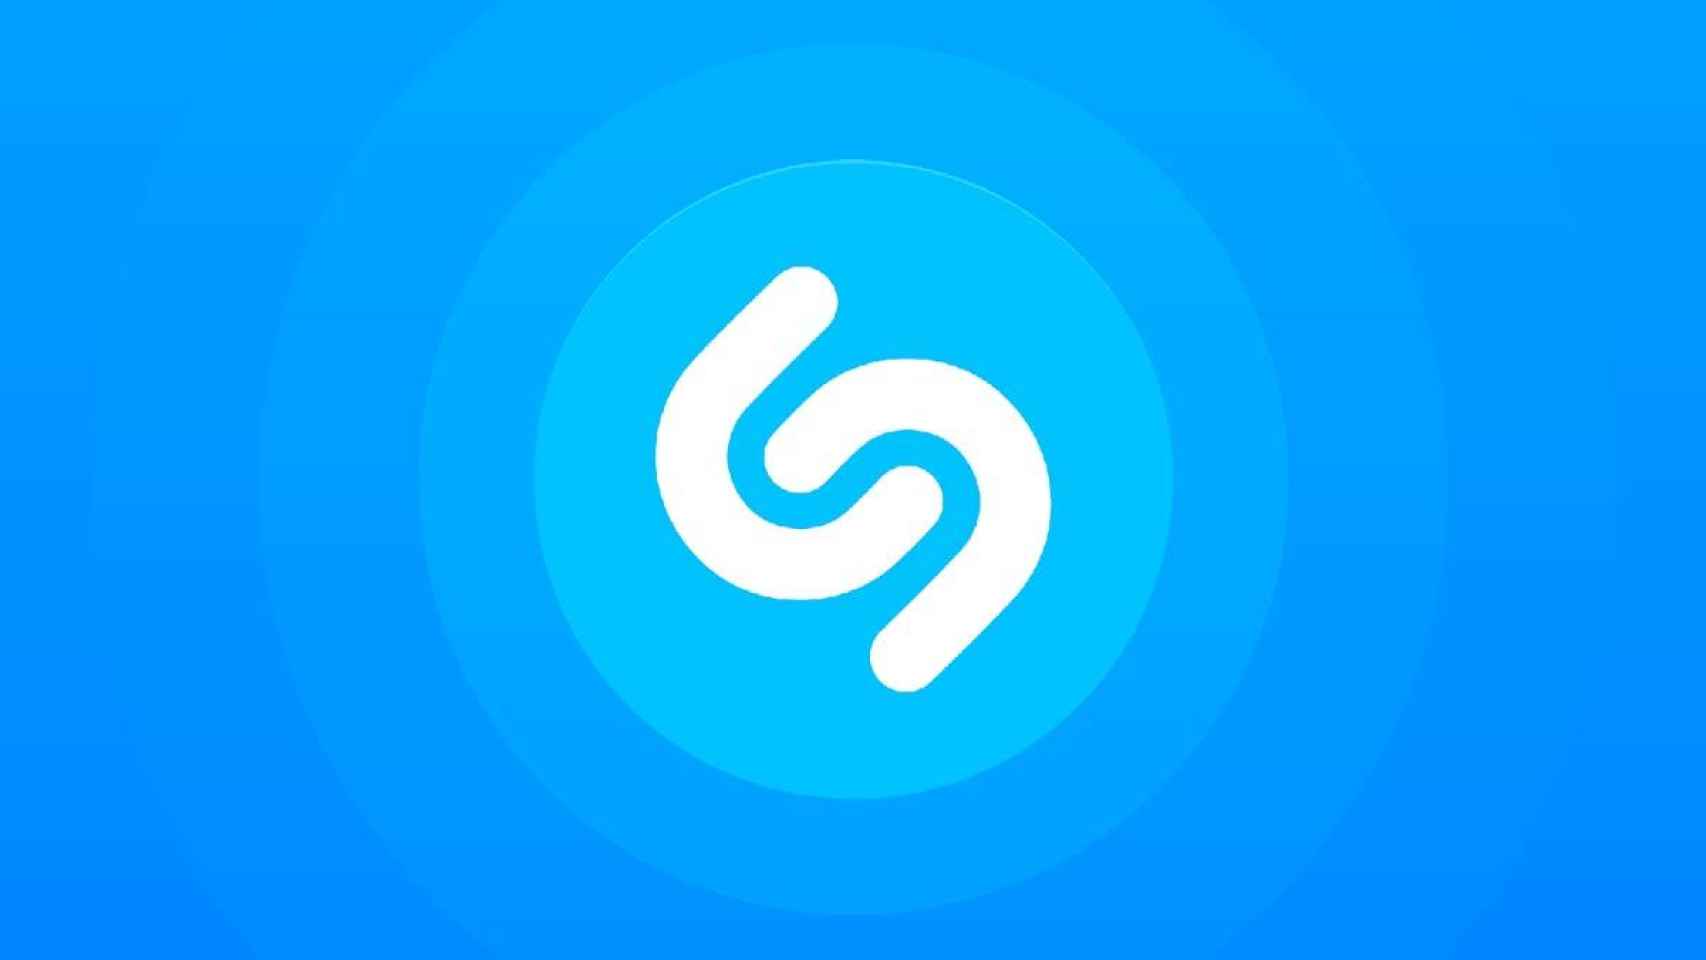 Ya puedes reproducir canciones de Shazam en YouTube Music: así se hace